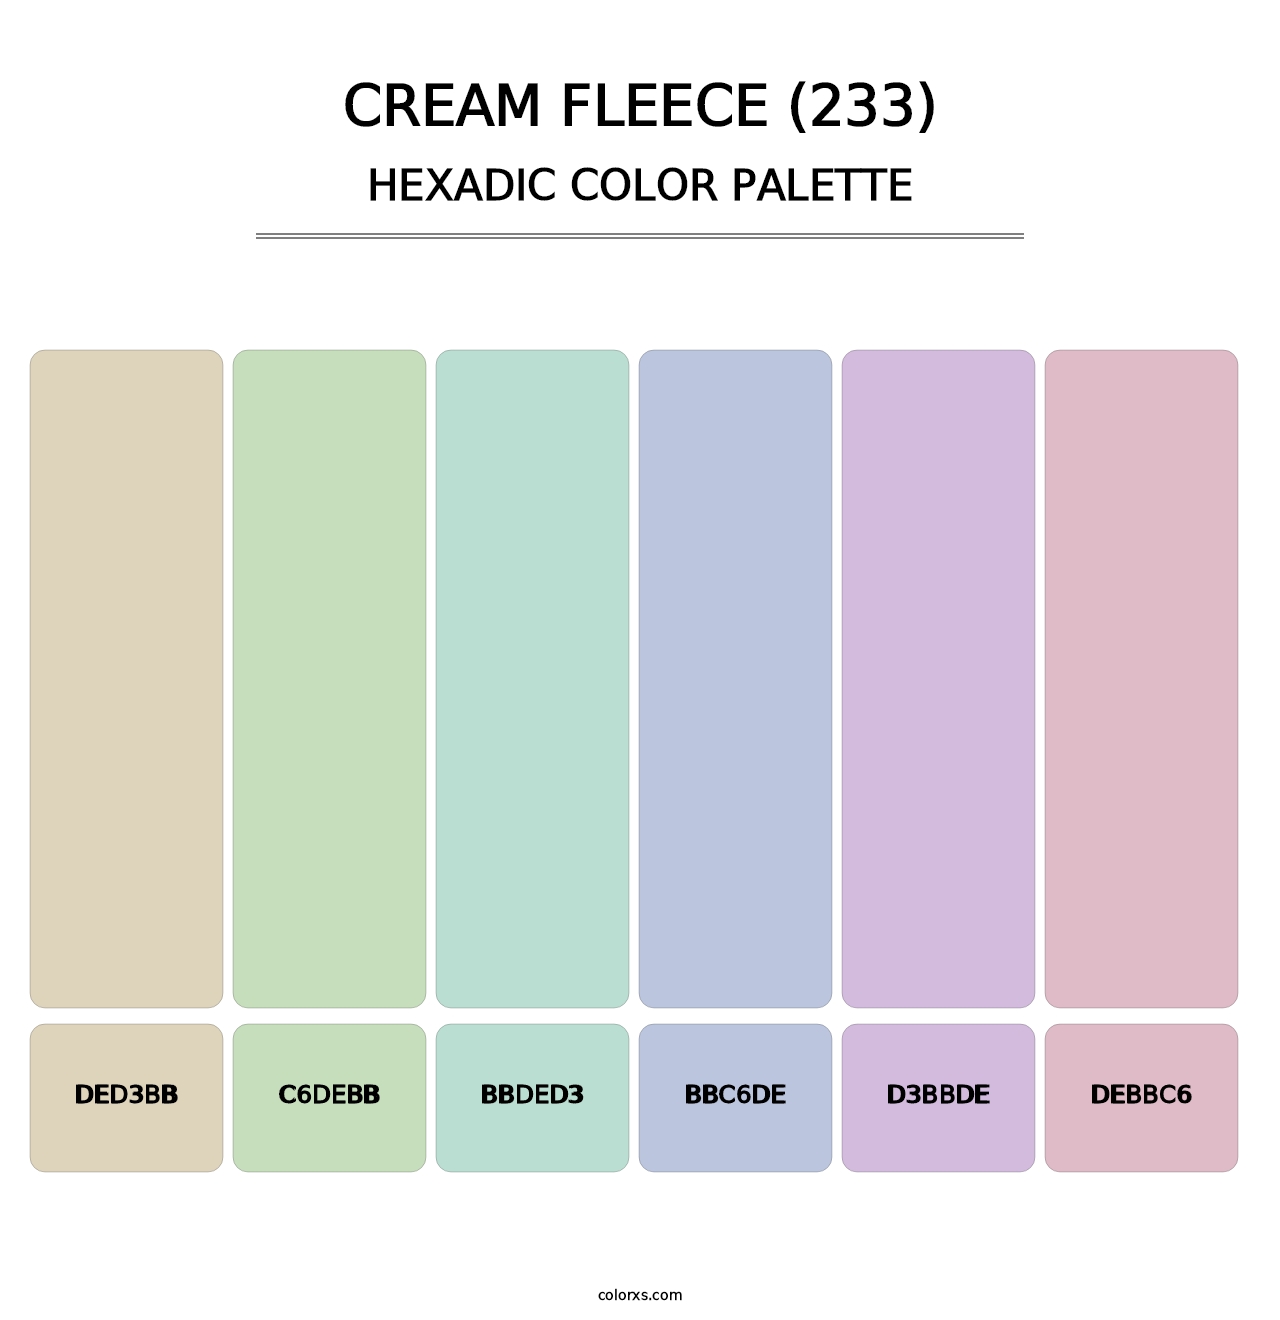 Cream Fleece (233) - Hexadic Color Palette